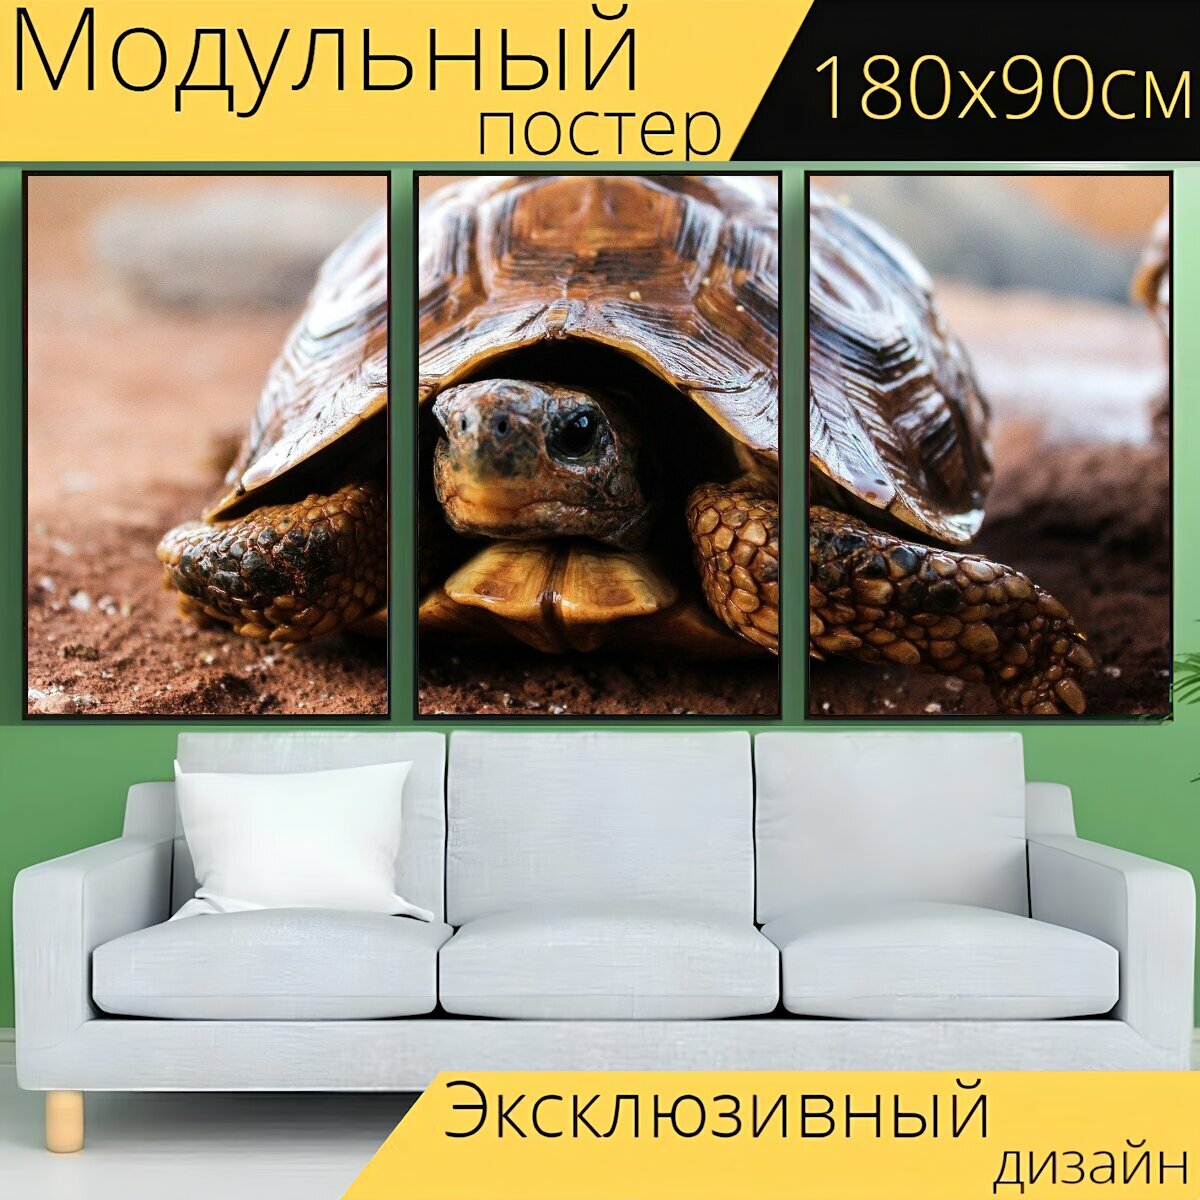 Модульный постер "Черепаха, природа, медленный" 180 x 90 см. для интерьера